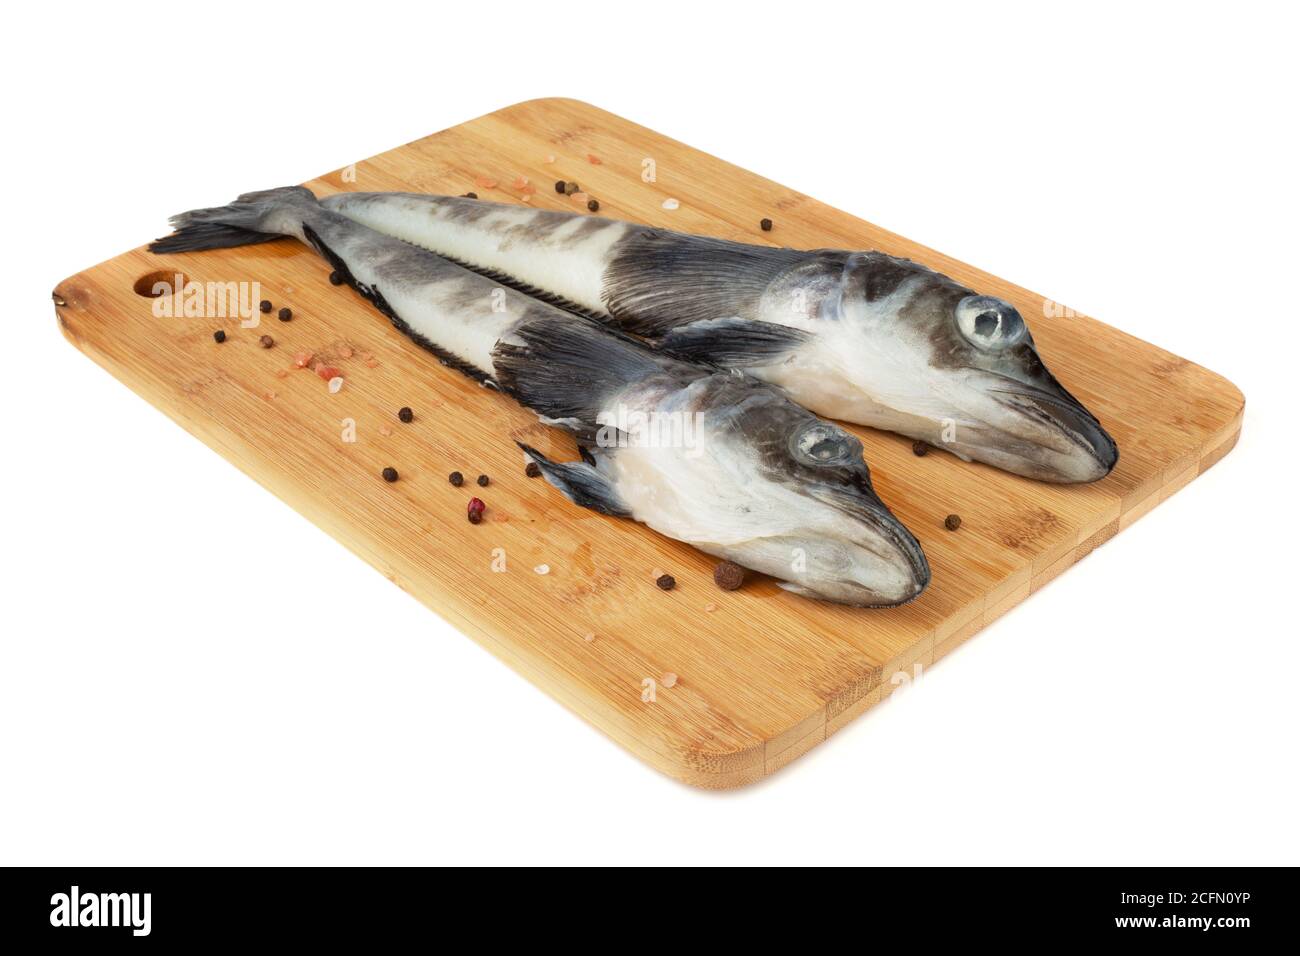 Fresh raw Mackerel Icefish ice fish on wooden cutting board isolated on white background Stock Photo